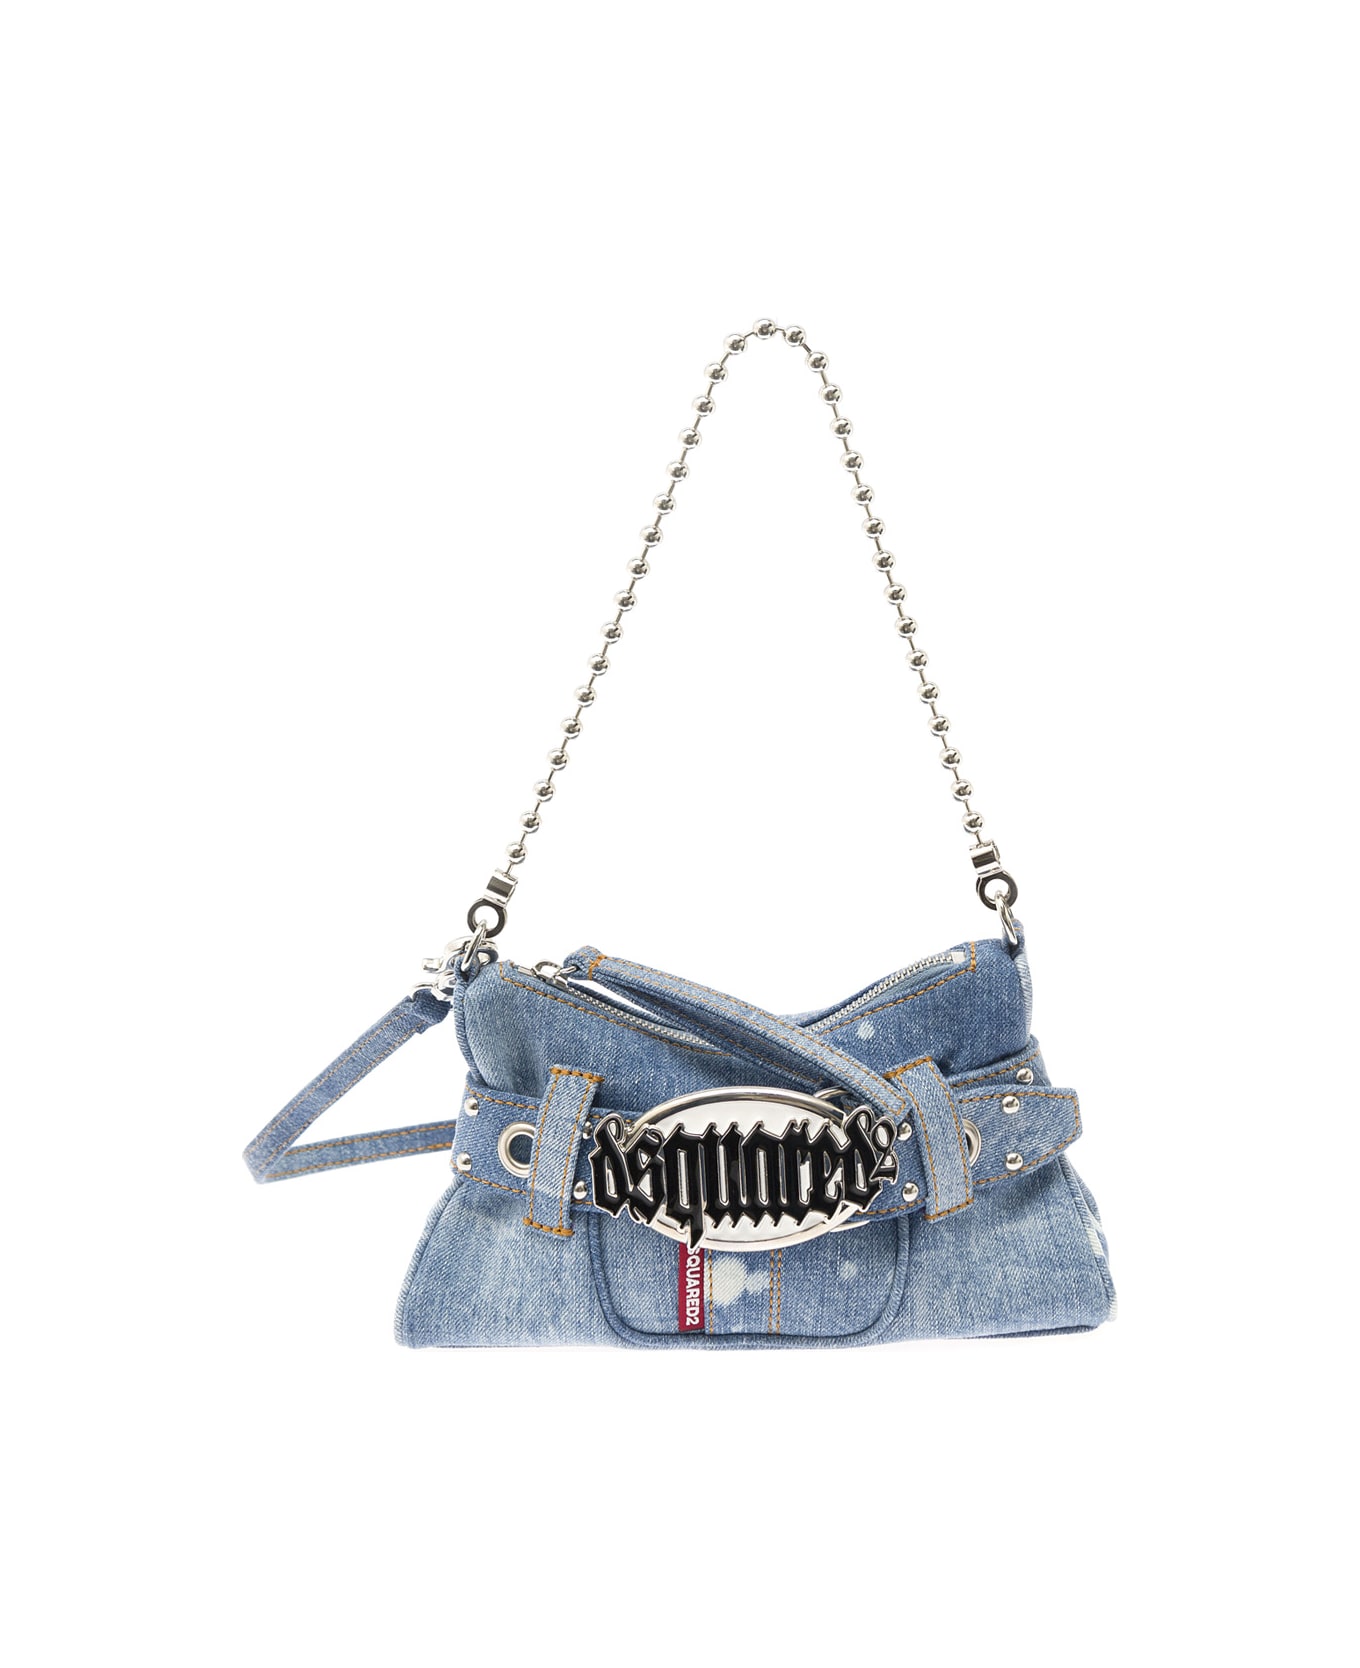 Dsquared2 'gothic' Light Blue Shoulder Bag With Belt Detail In Denim Woman - Light blue